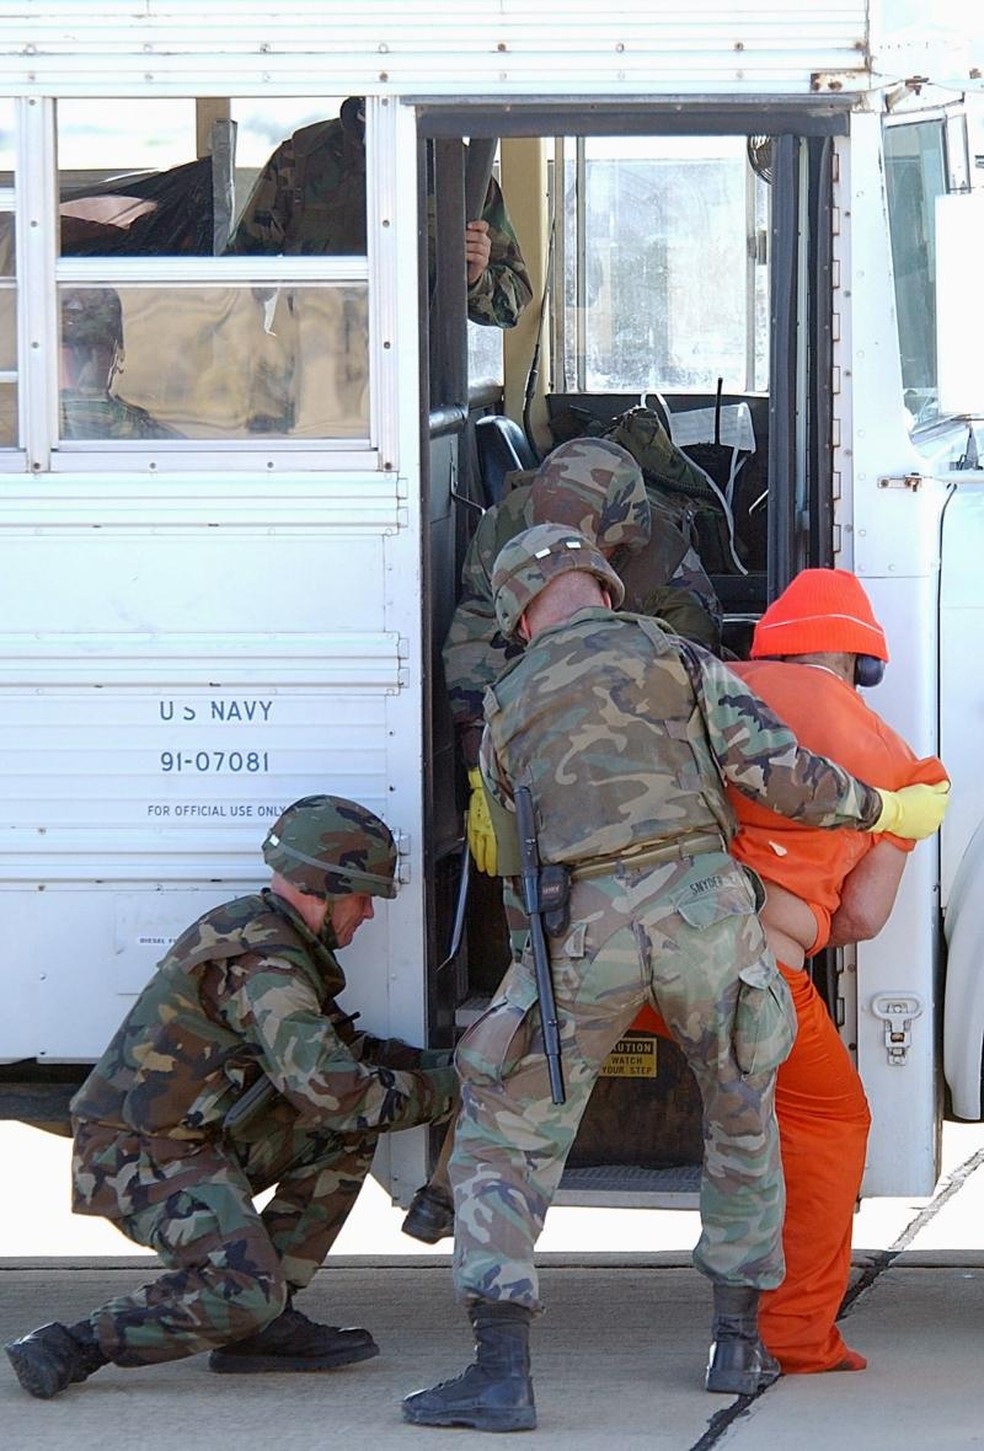 As medidas restritivas impostas aos prisioneiros complicavam a transferência, como é o caso deste detido, que possui uma prótese ortopédica. Ele foi identificado pelo jornal New York Times como Mulá Fazel Mohammad Mazloom, um líder Talibã considerado pelos EUA de alto risco. Ele passou 12 anos em Guantánamo até ser trocado, junto com outros quatro prisioneiros do Talebã, por um soldado americano. — Foto: JEREMY T. LOCK/USAF via BBC